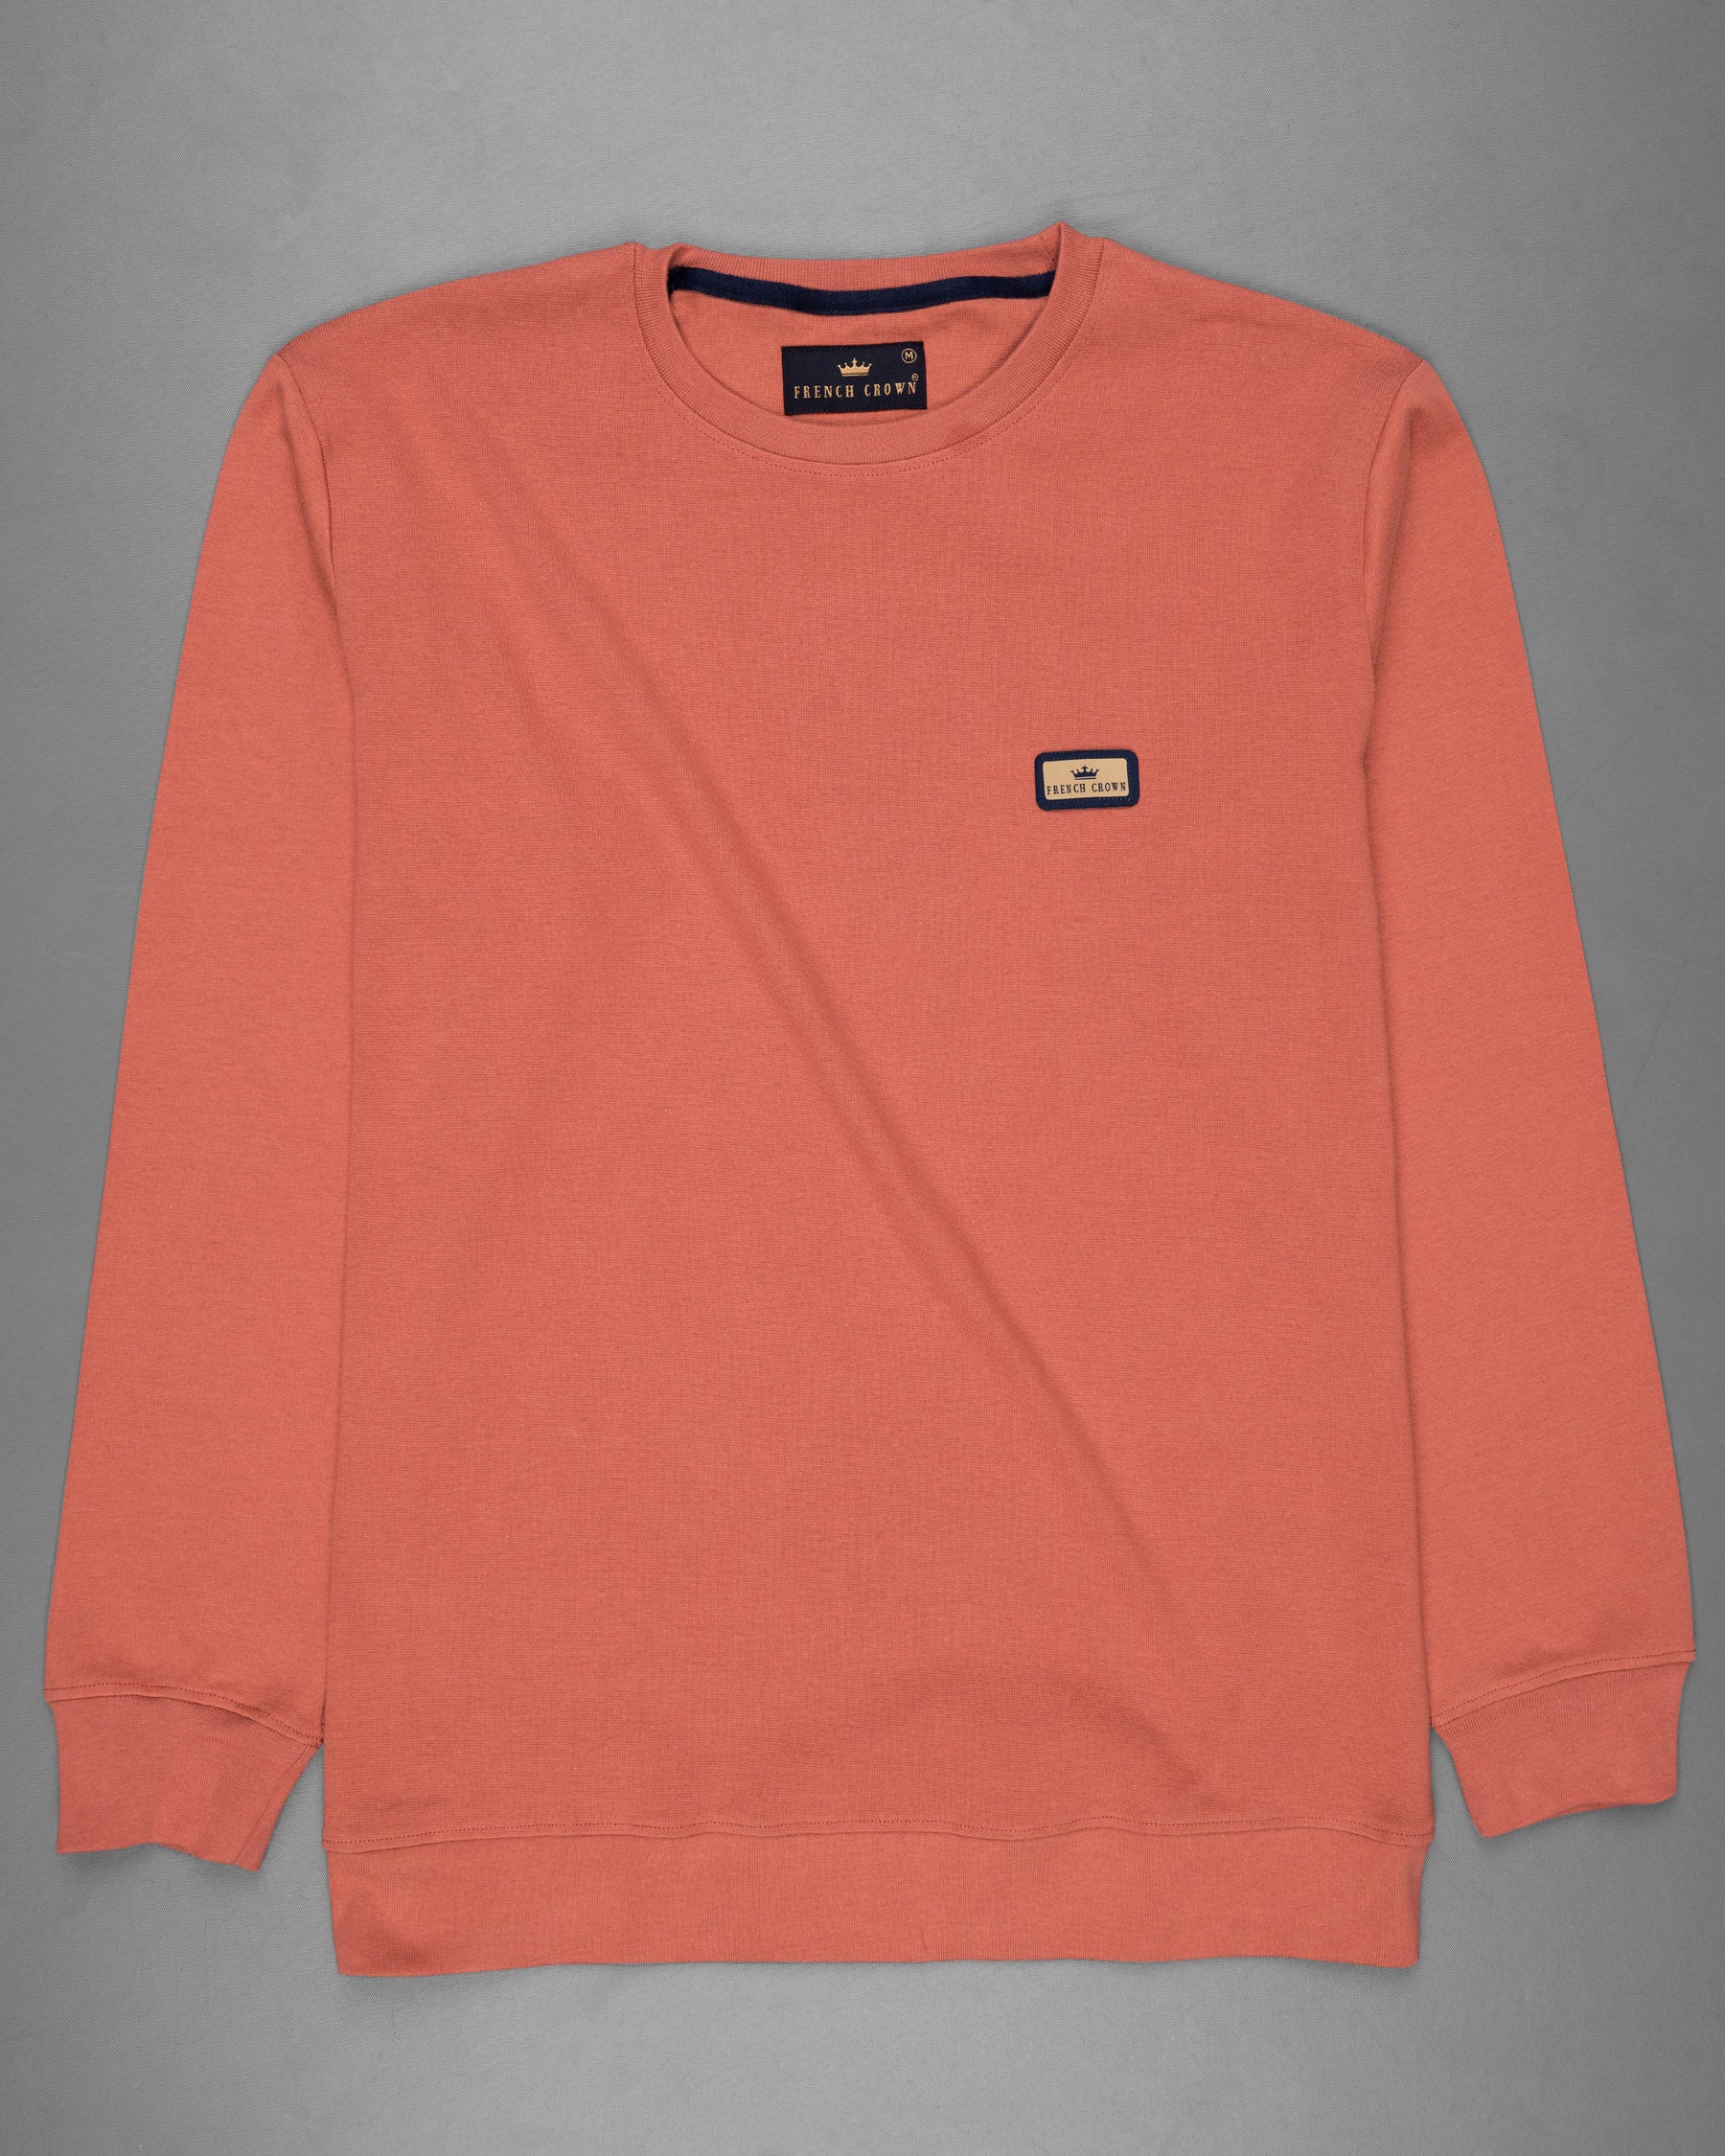 Terra Cotta Full Sleeve Premium Cotton Jersey Sweatshirt TS479-S, TS479-M, TS479-L, TS479-XL, TS479-XXL